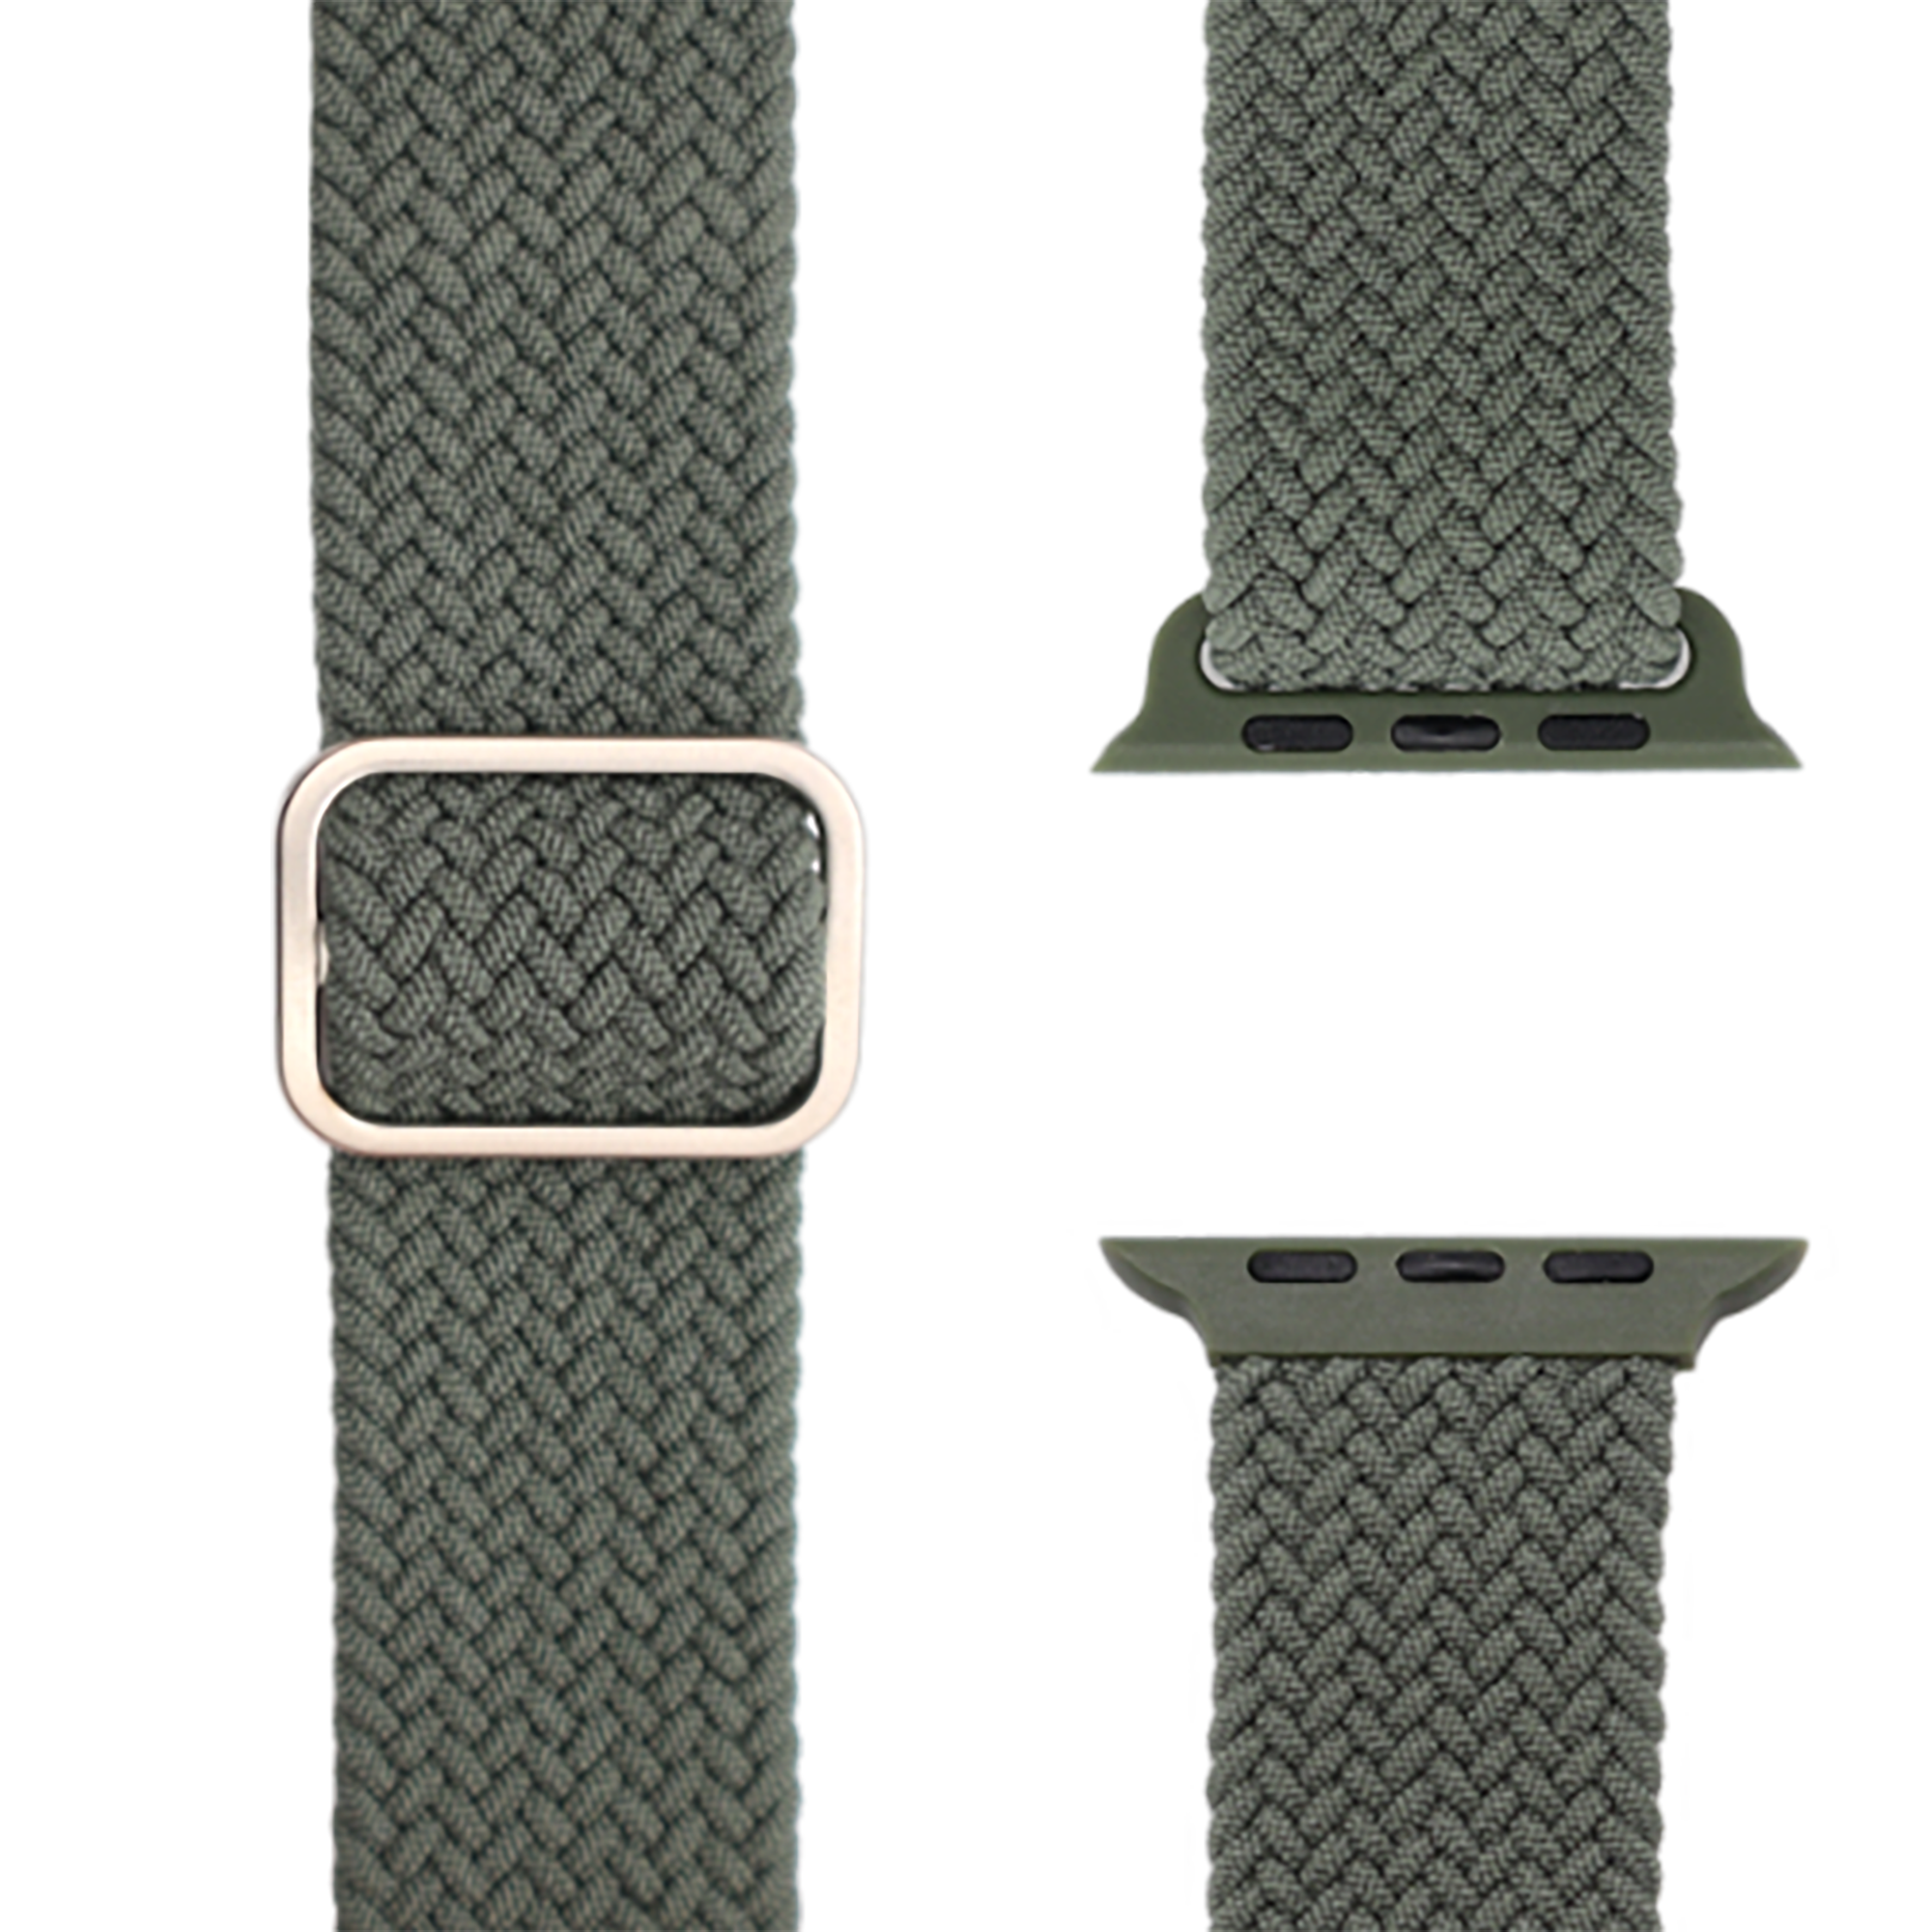 Flex / | 41mm, Loop Series Series 9 40mm 1 Grün und Watch SE, | 38mm Ersatzarmband, - Apple, Geflochtenes APFELBAND